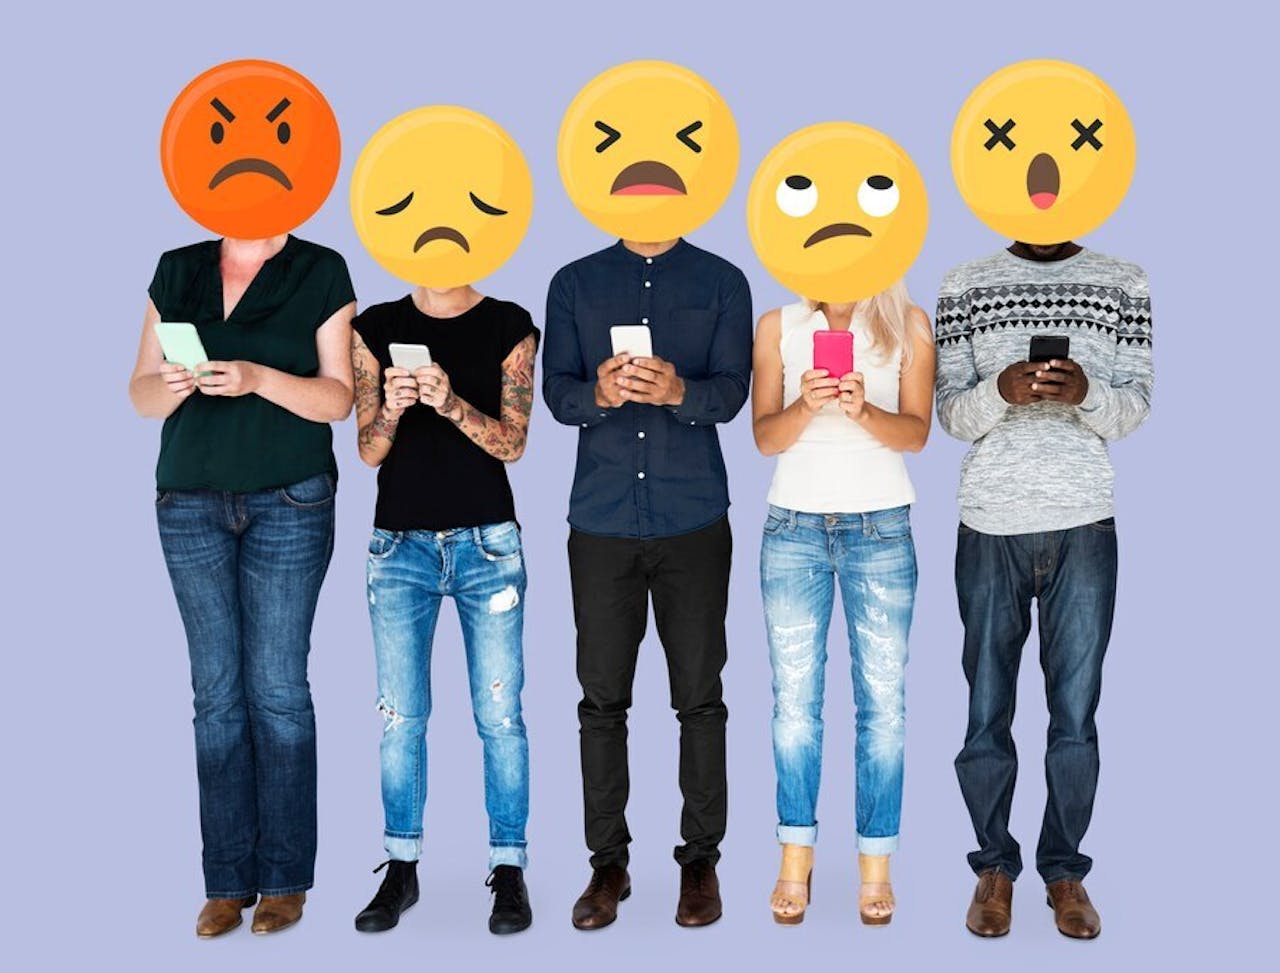 Droeve en kwade emoji gezichten in een groepje bij elkaar op de plek van het gezicht, de groep houdt allemaal een telefoon vast